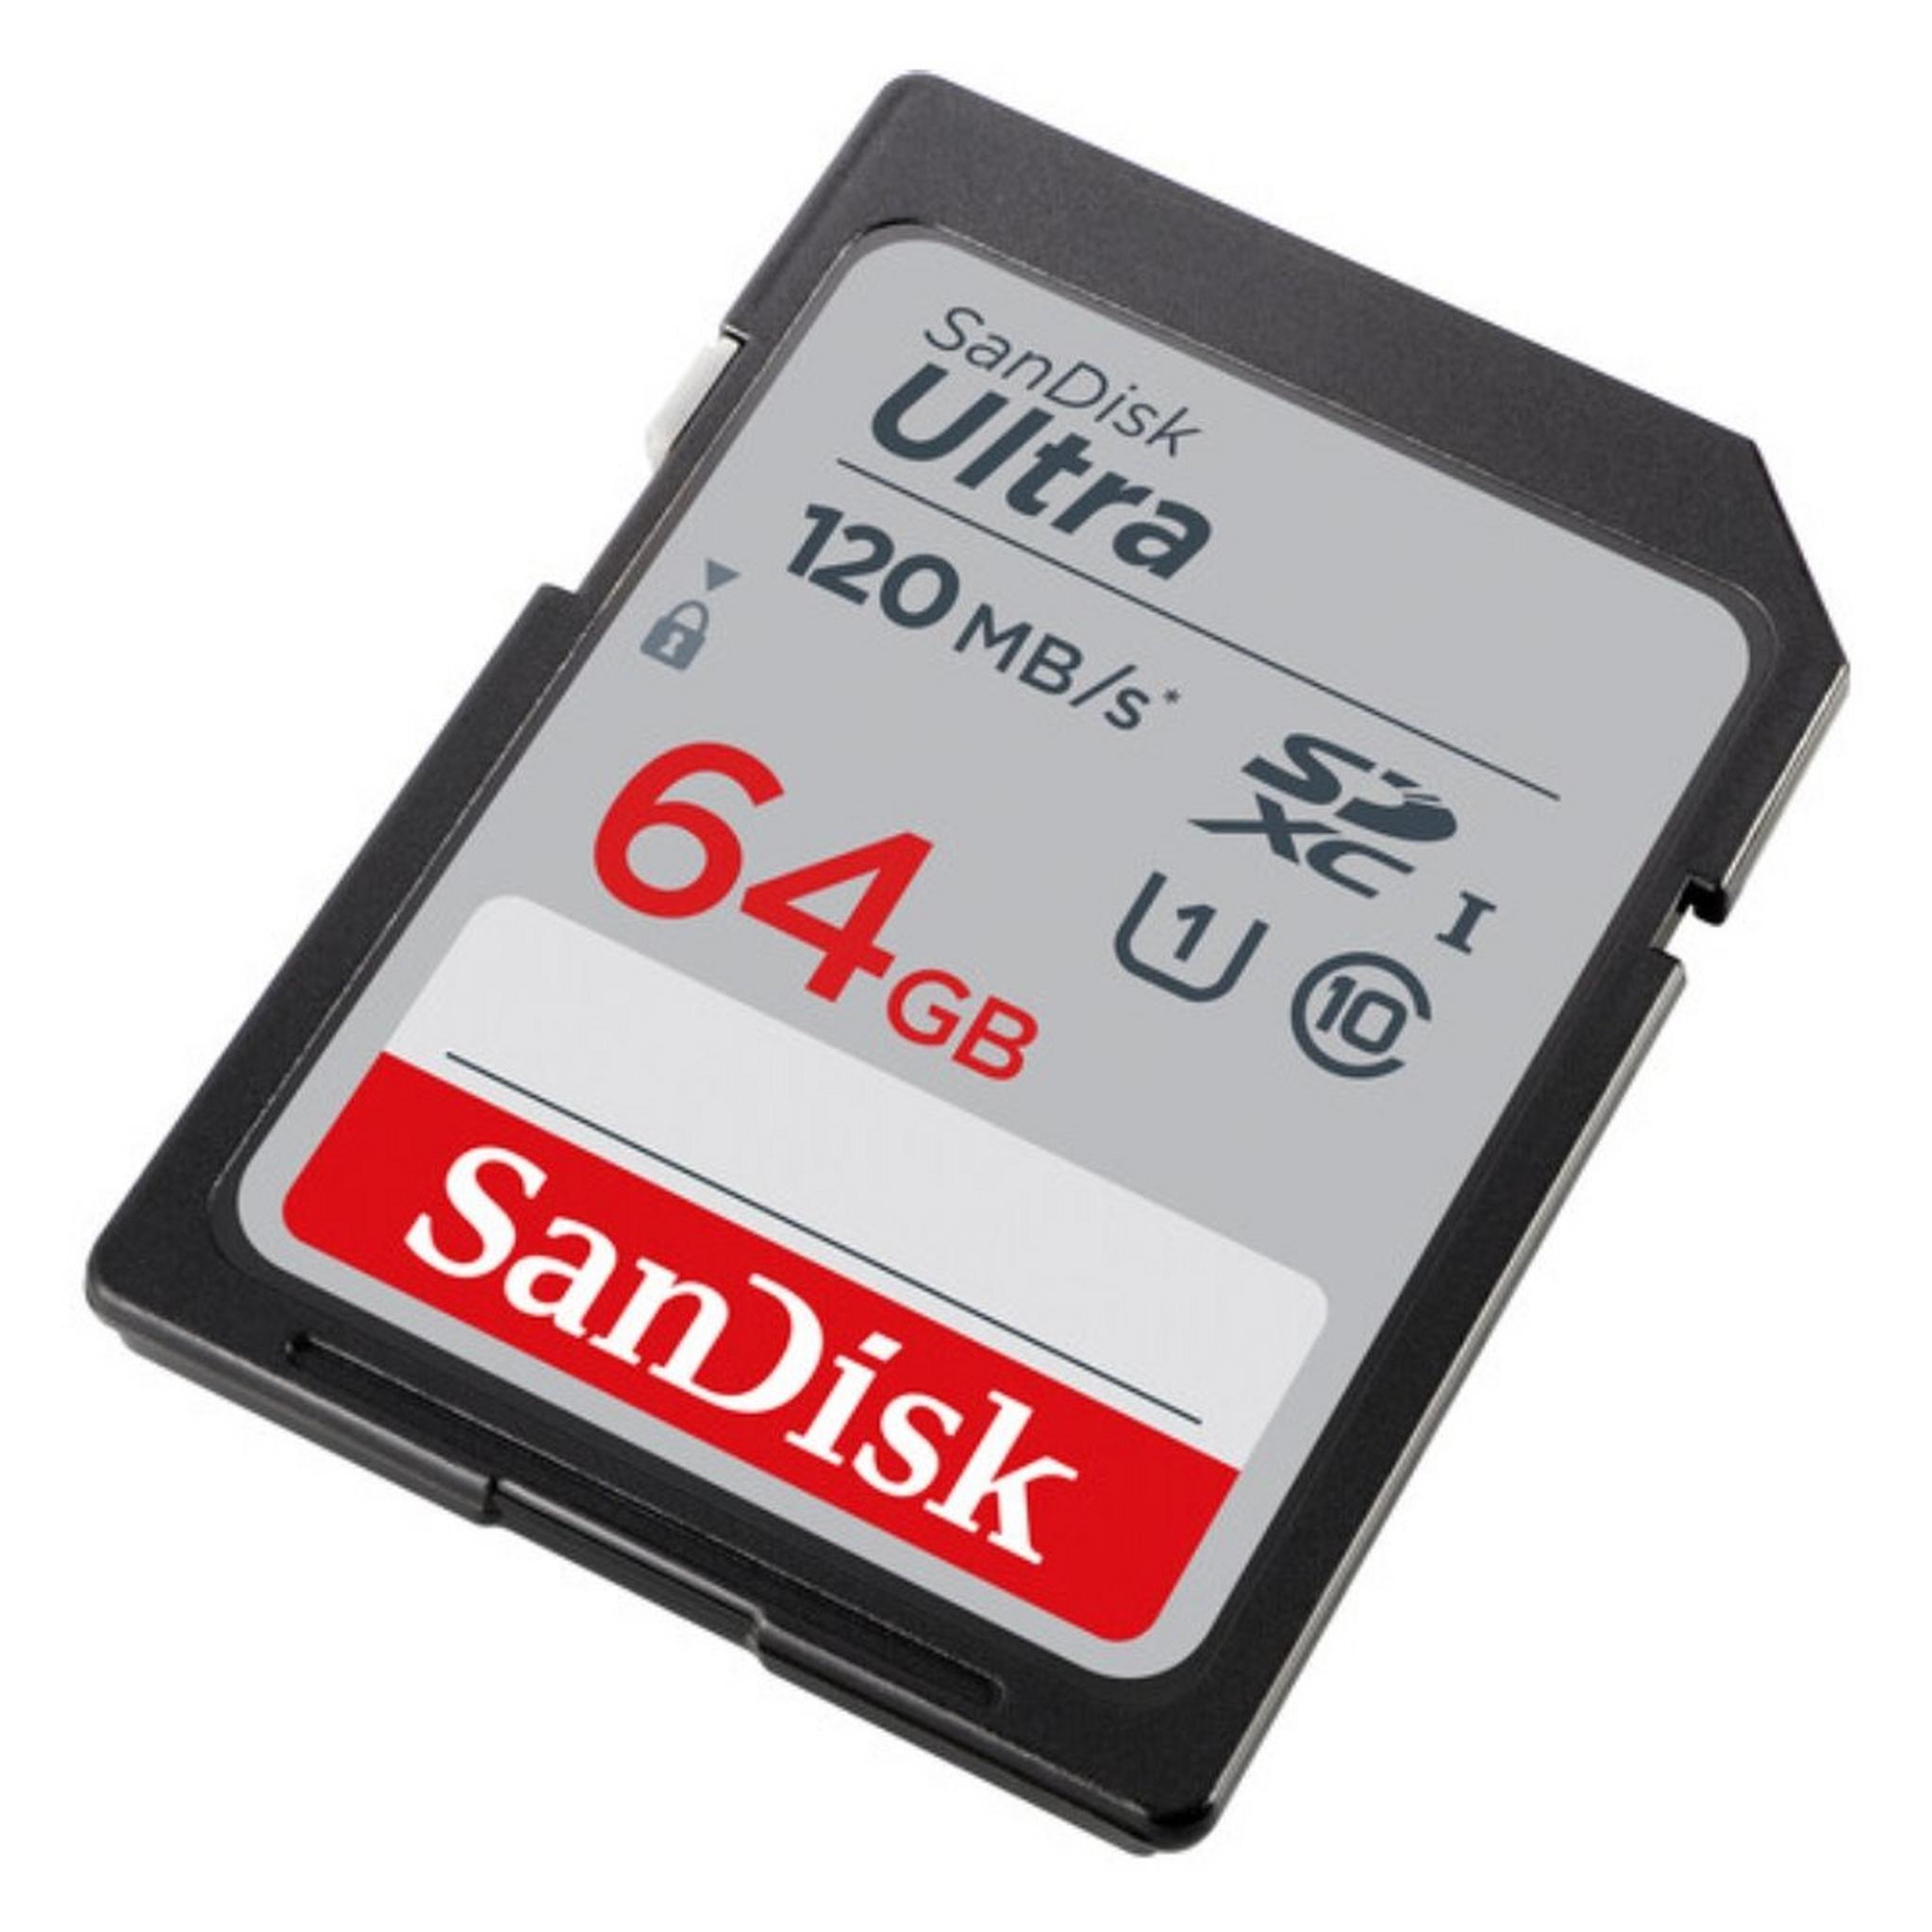 بطاقة ذاكرة سان ديسك ألترا UHS-I SDXC بسعة 64 جيجابايت